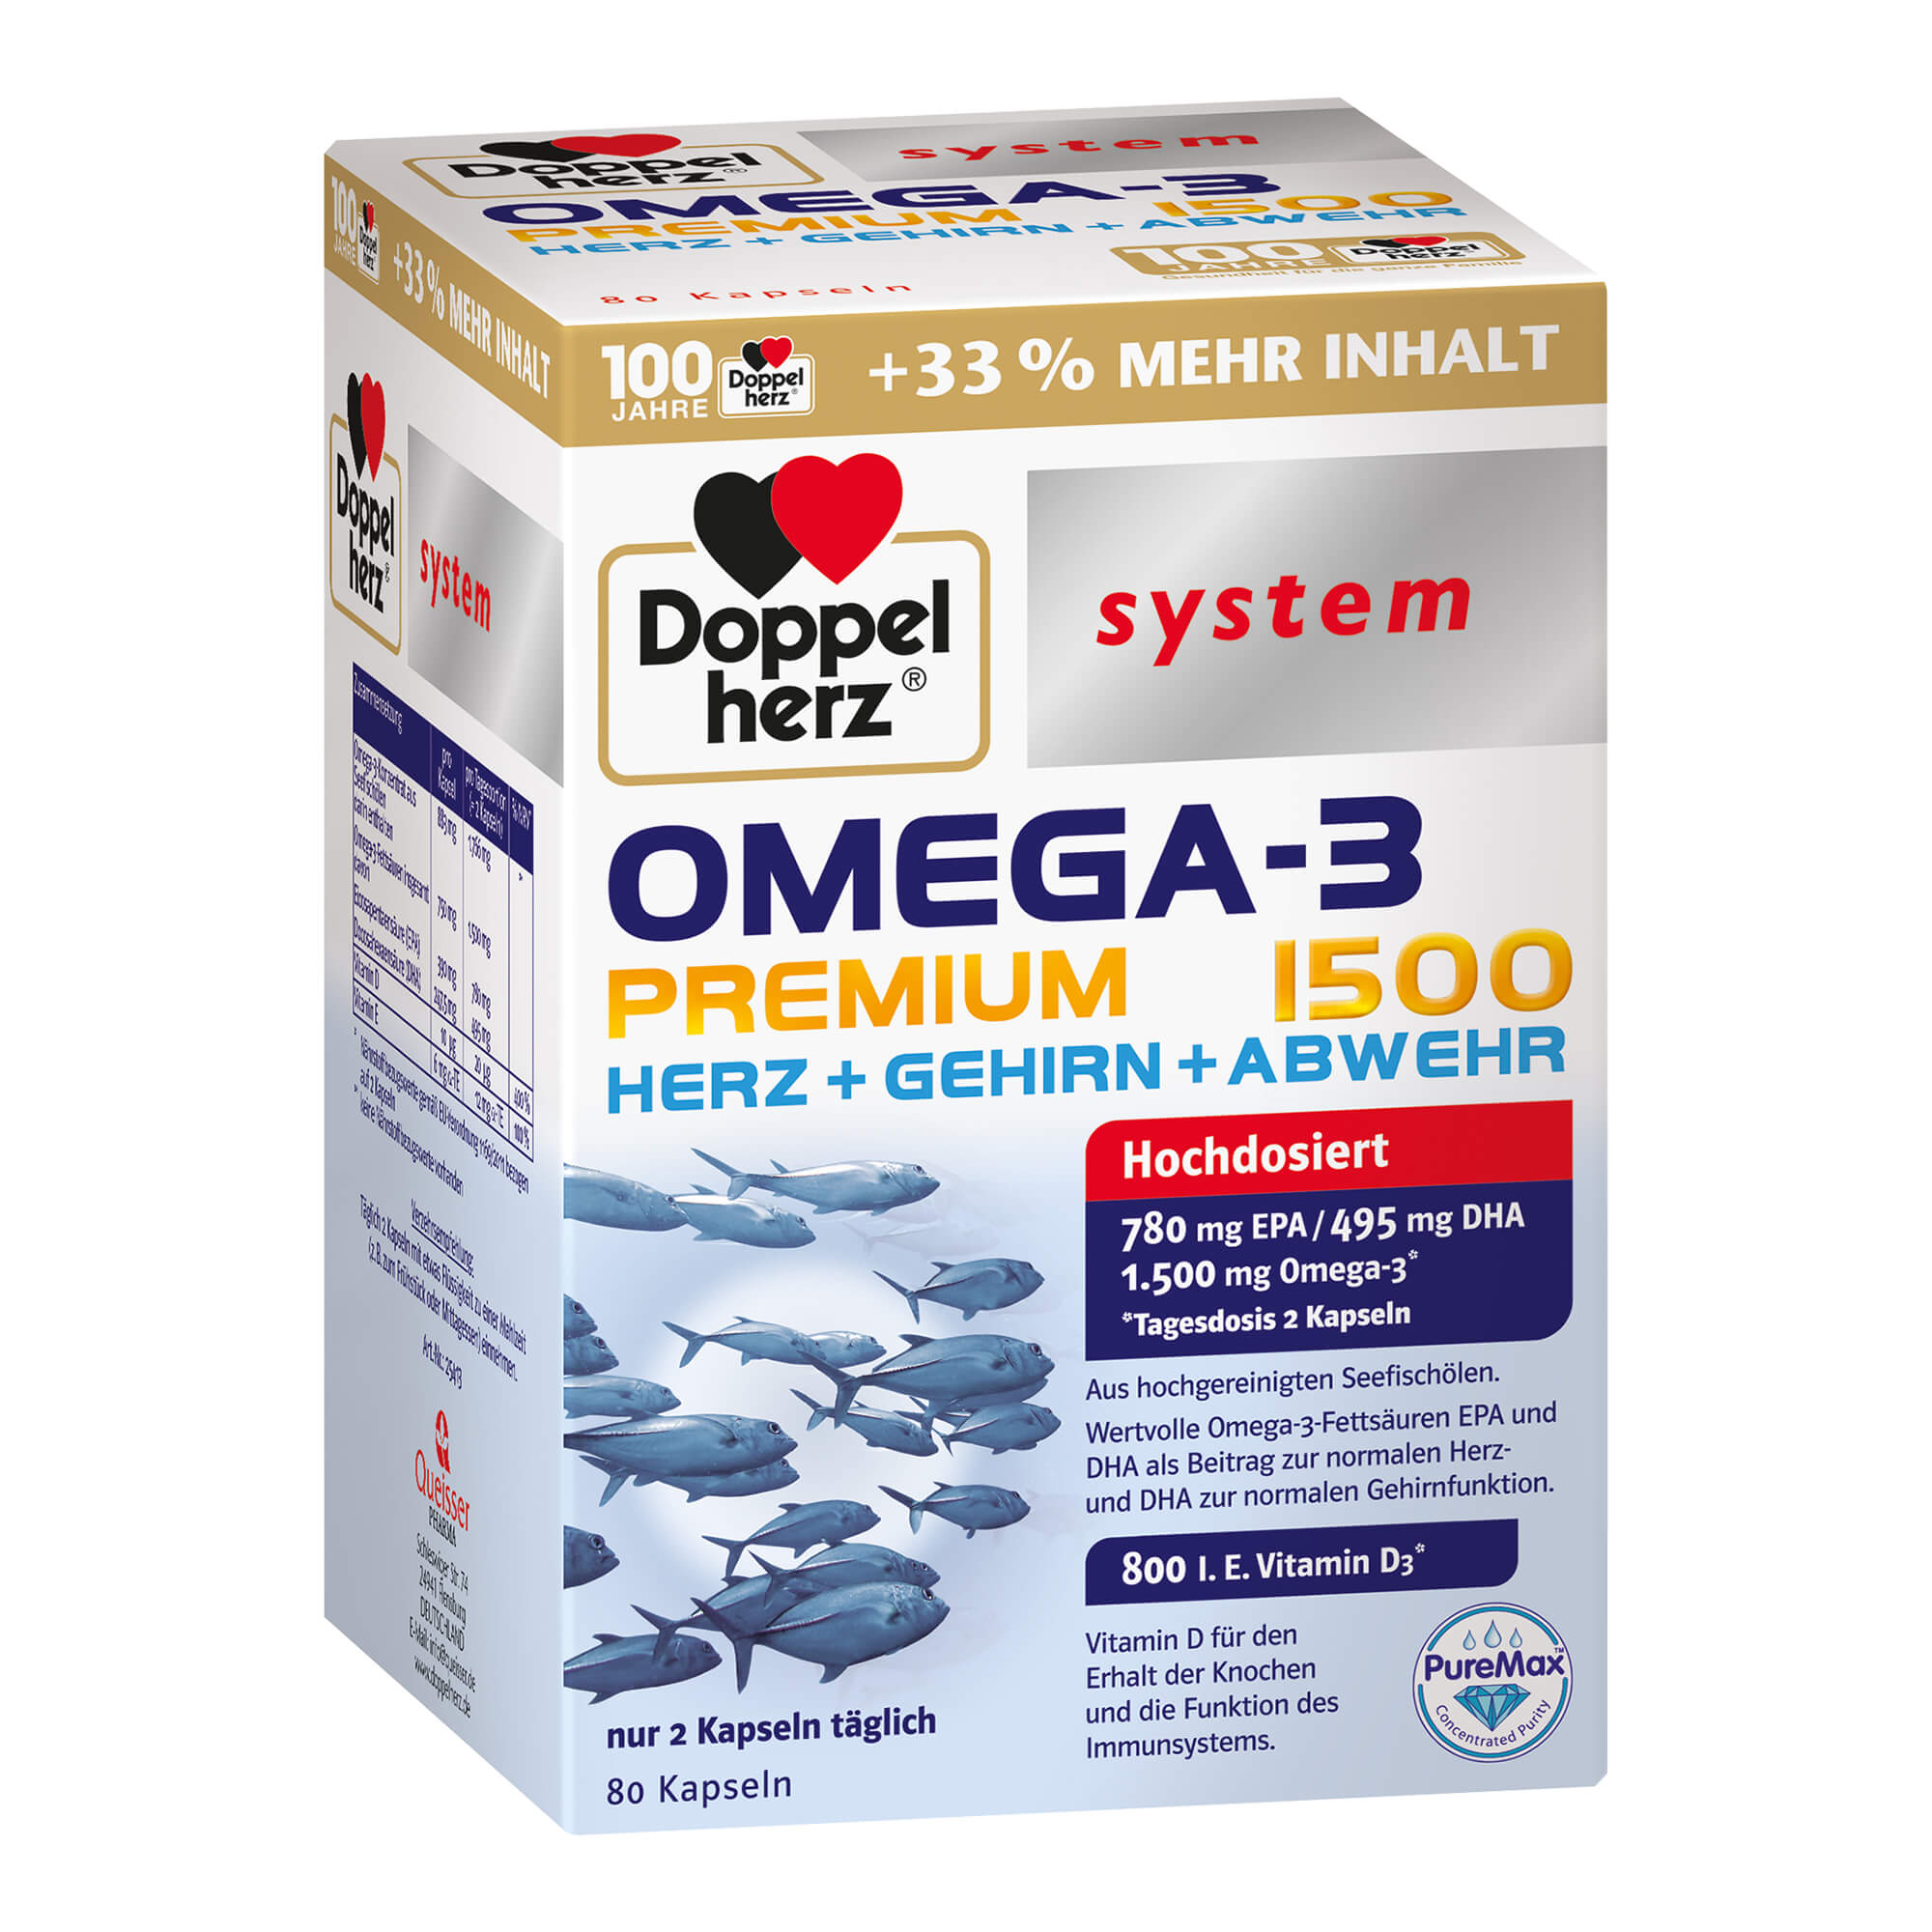 Nahrungsergänzungsmittel mit Omega-3 Konzentrat aus Seefischölen und Vitamin D und E.